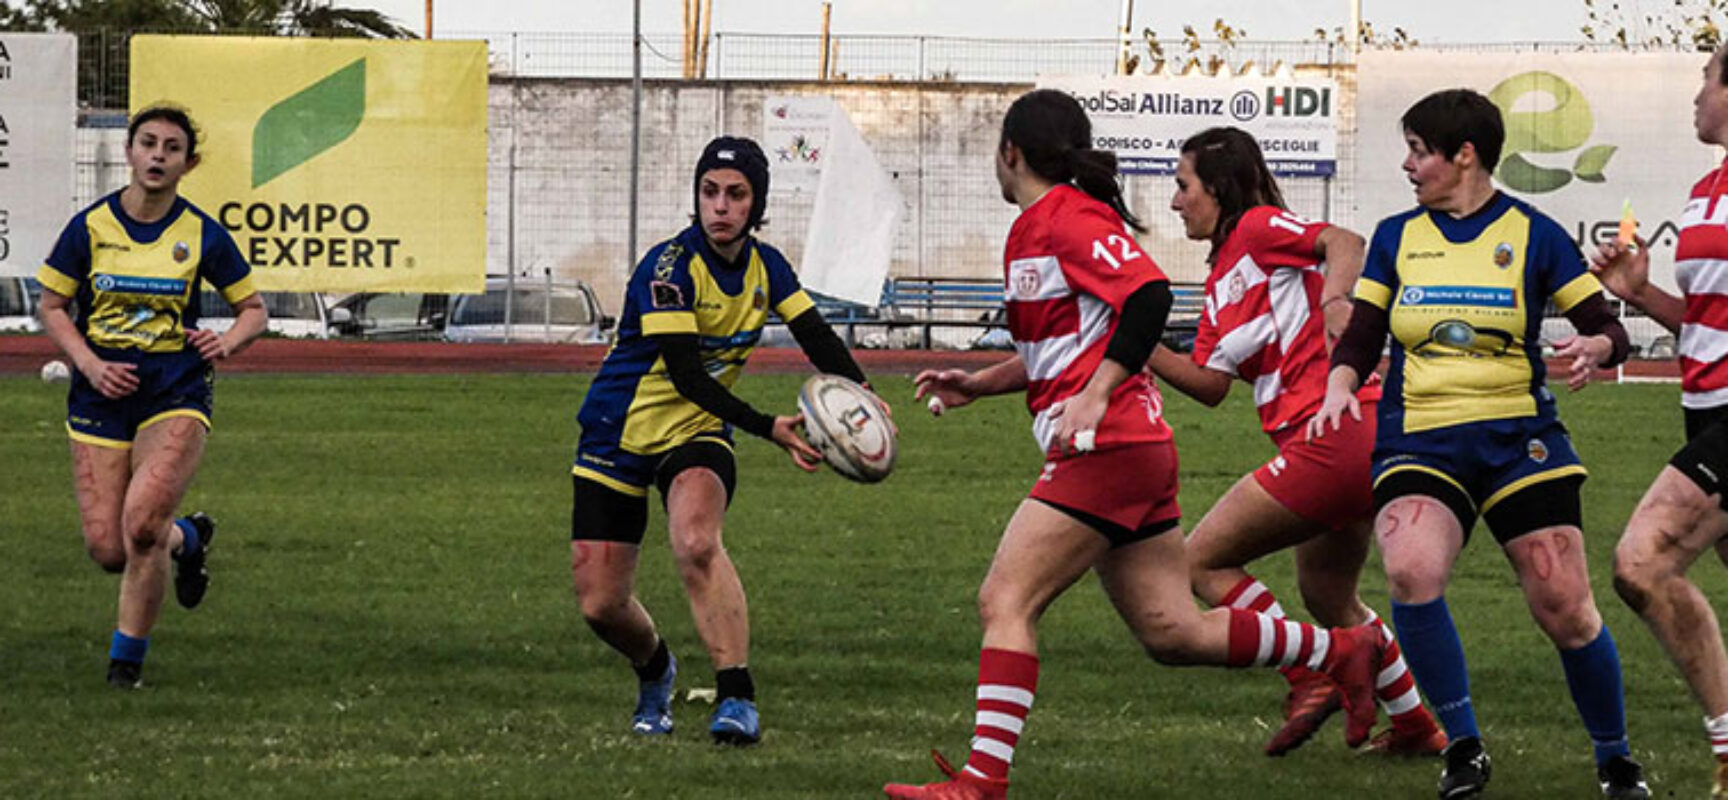 Prima trasferta stagionale a Catania per il Bisceglie Rugby